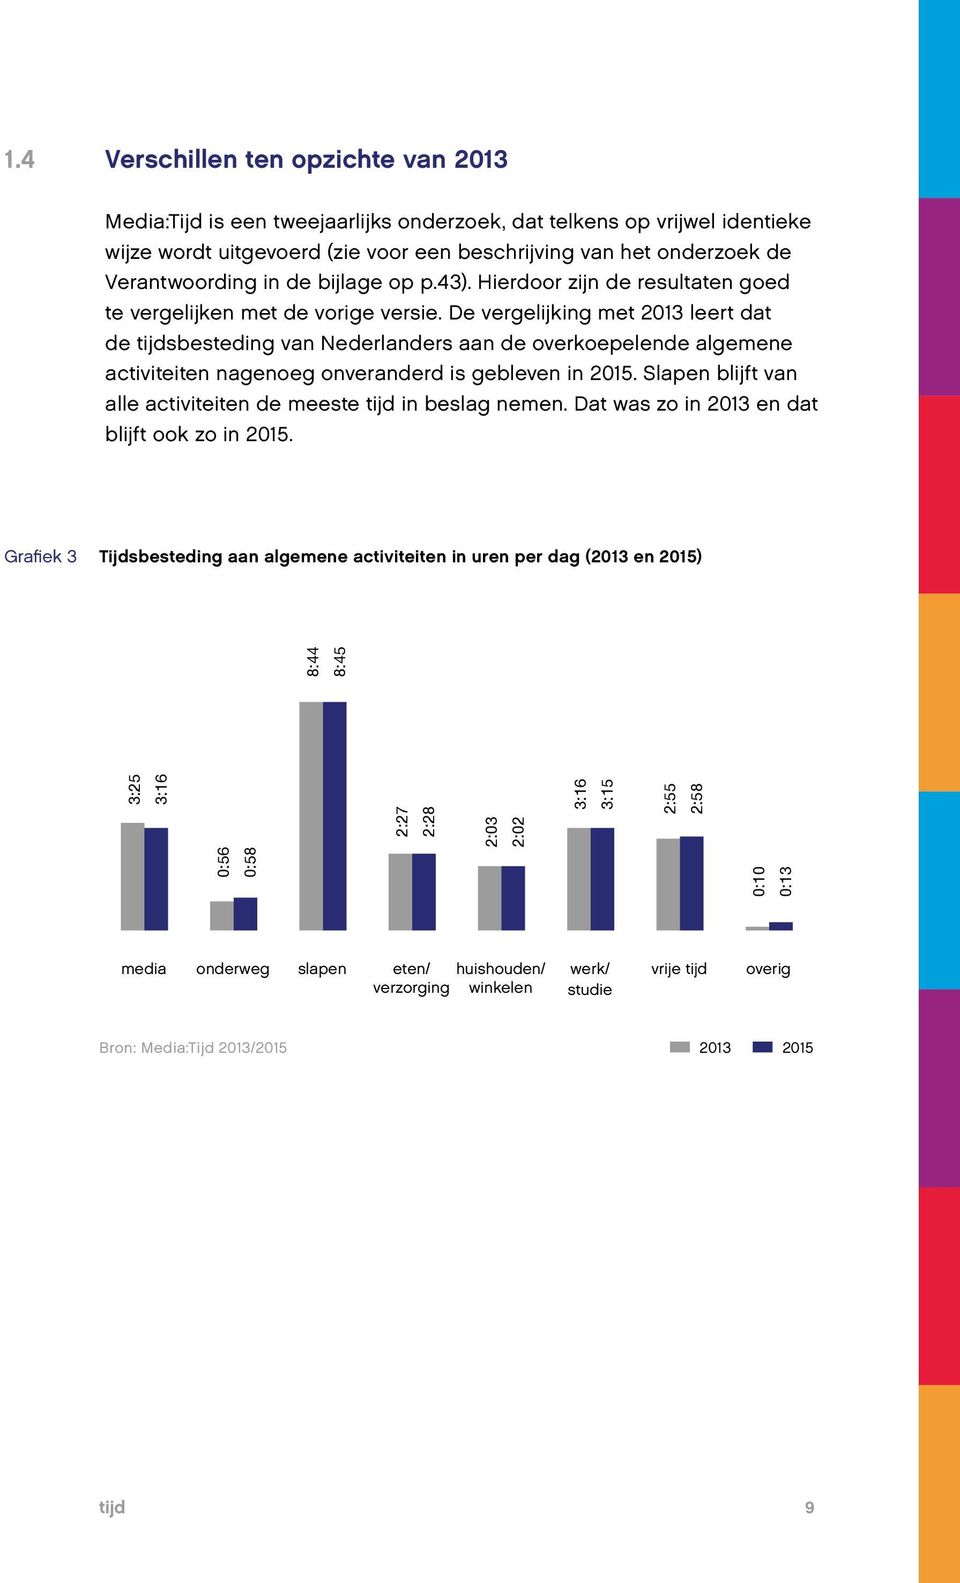 De vergelijking met 2013 leert dat de tijdsbesteding van Nederlanders aan de overkoepelende algemene activiteiten nagenoeg onveranderd is gebleven in 2015.